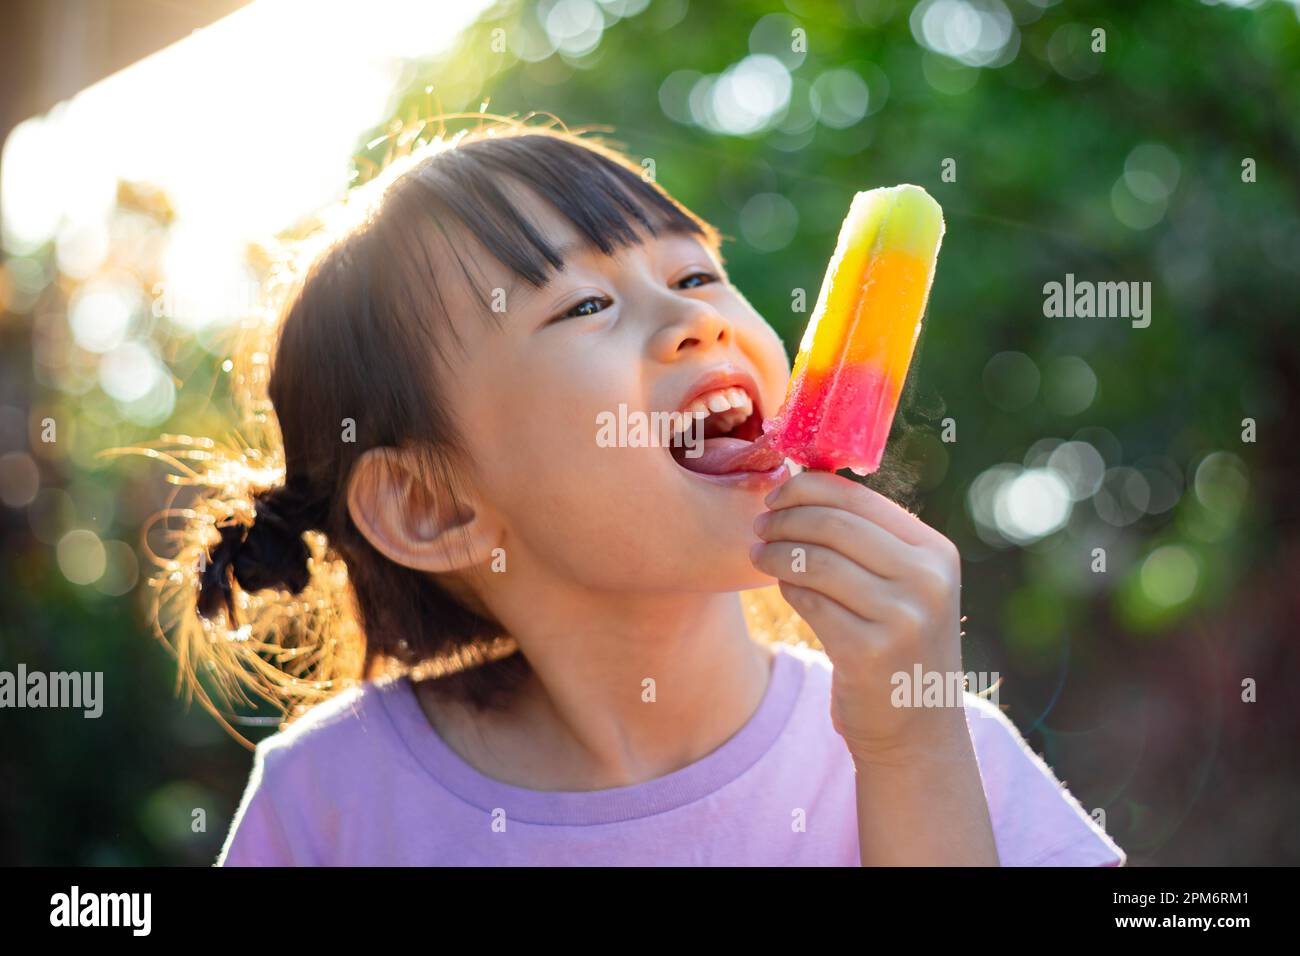 Obese kid immagini e fotografie stock ad alta risoluzione - Alamy